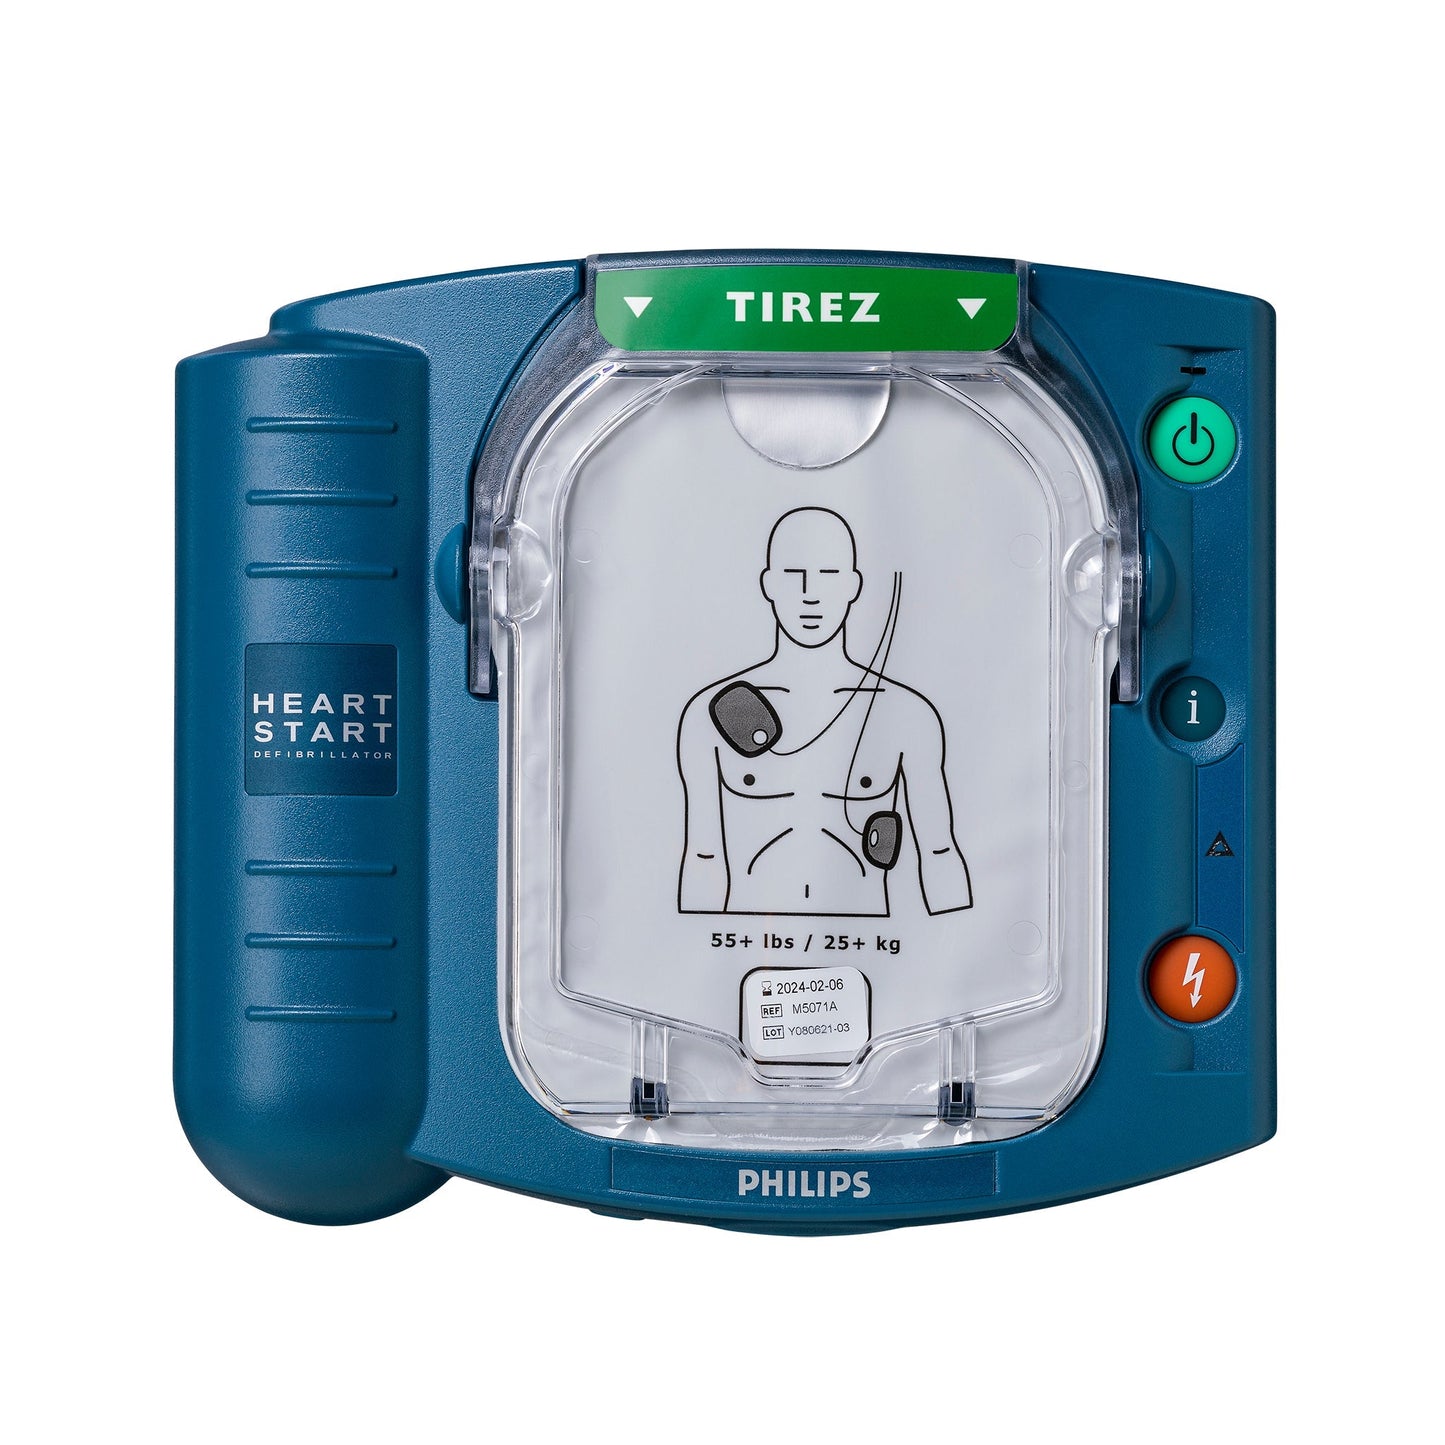 Philips Heartstart Komplettpaket – HS1 AED mit Schutzhülle